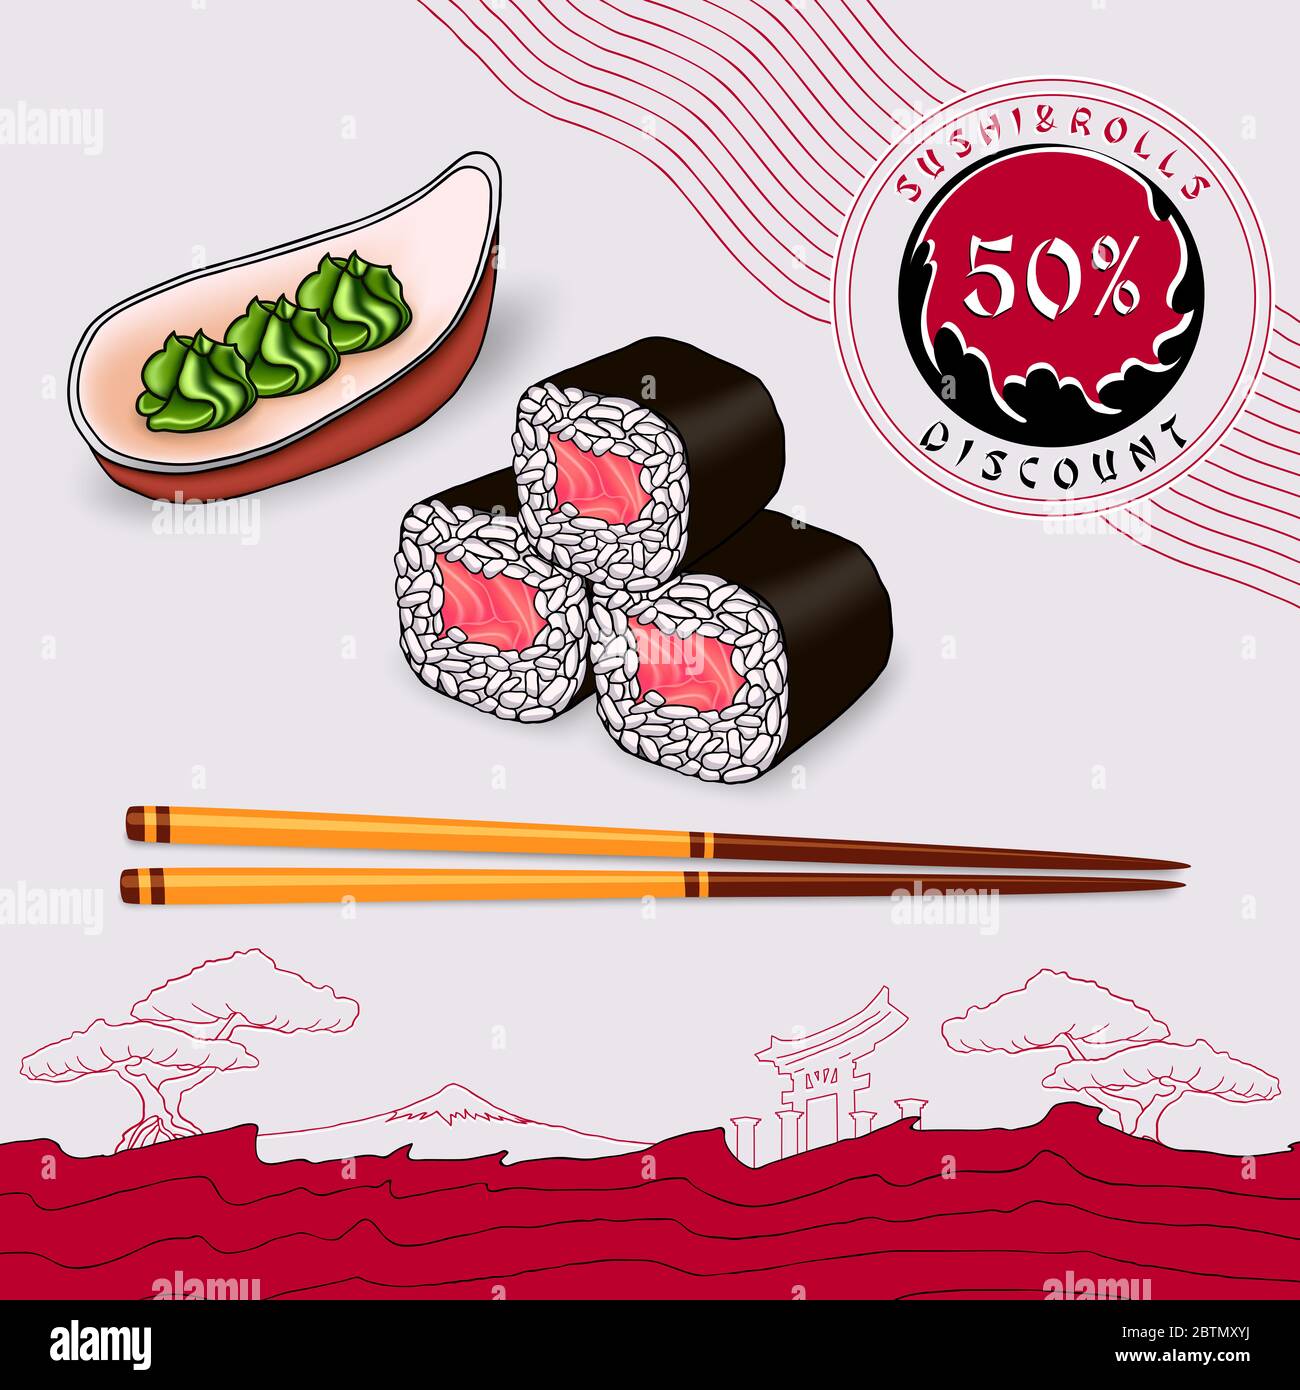 coupon de réduction pour la circulaire rouleaux de saumon japonais enveloppés d'algues sur une assiette gris clair avec baguettes Banque D'Images